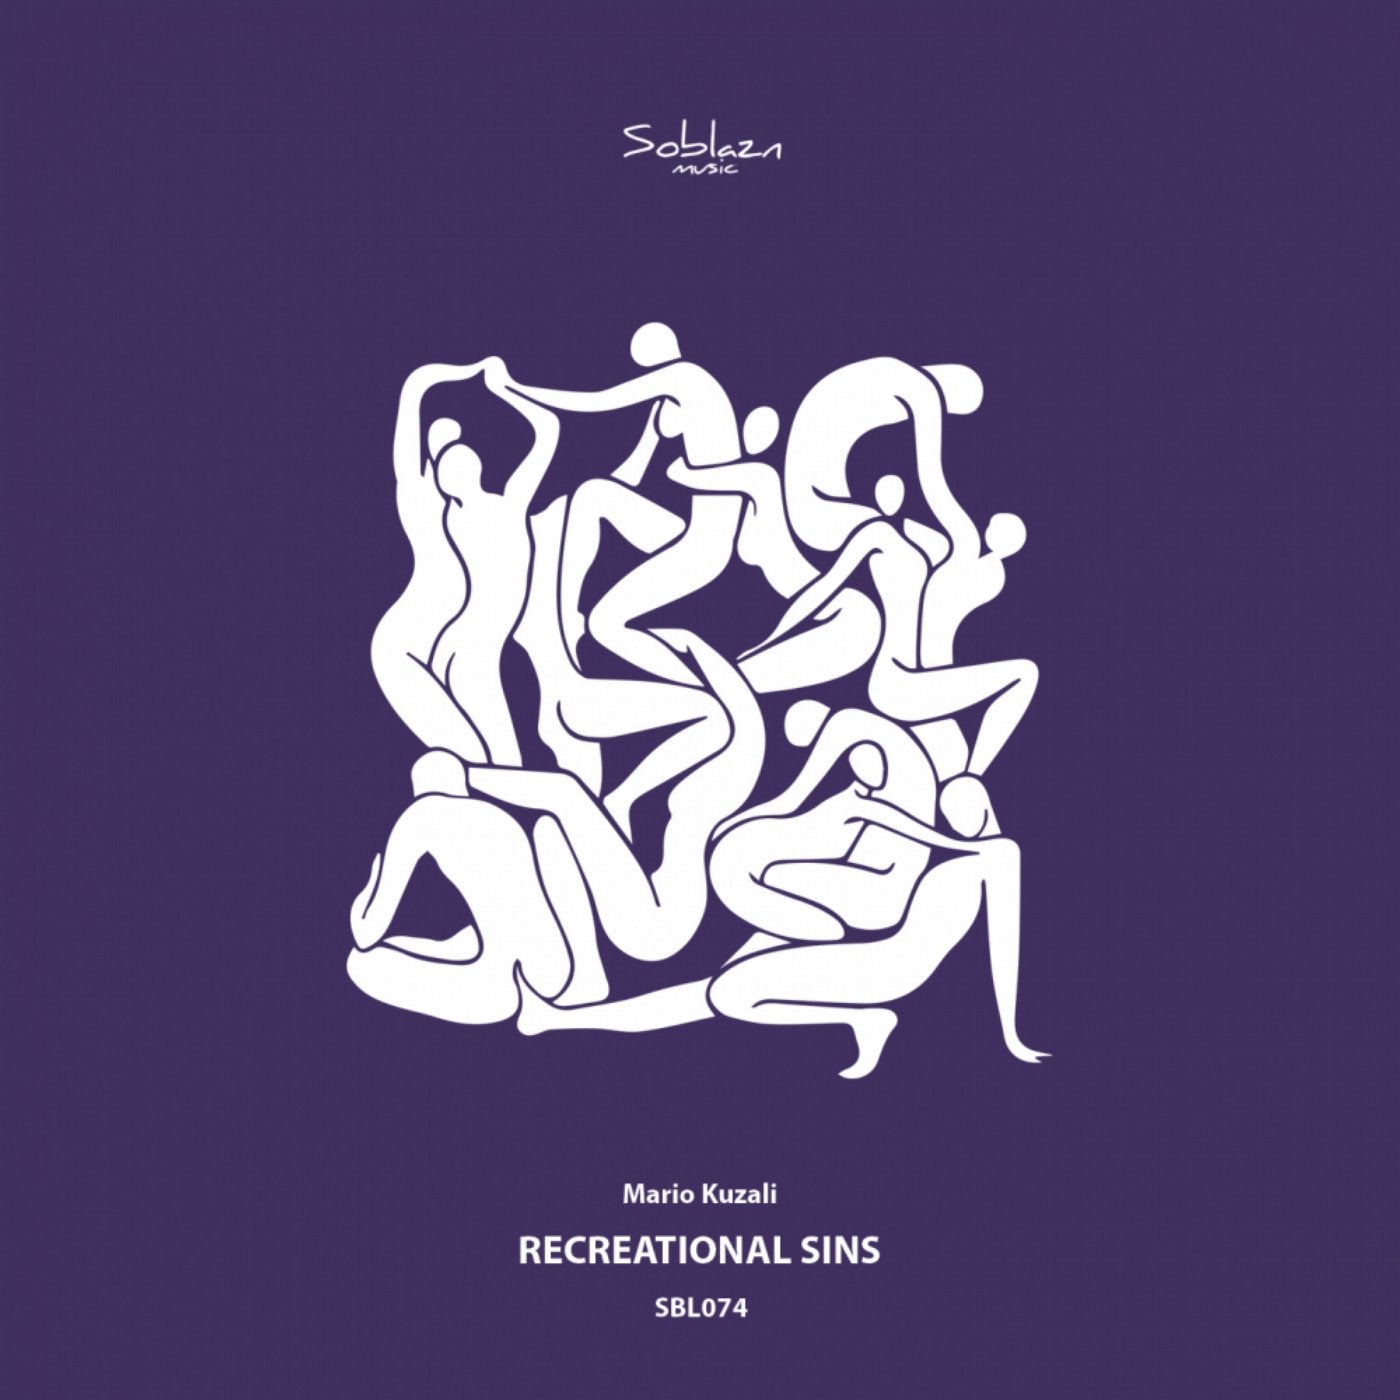 Recreational Sins